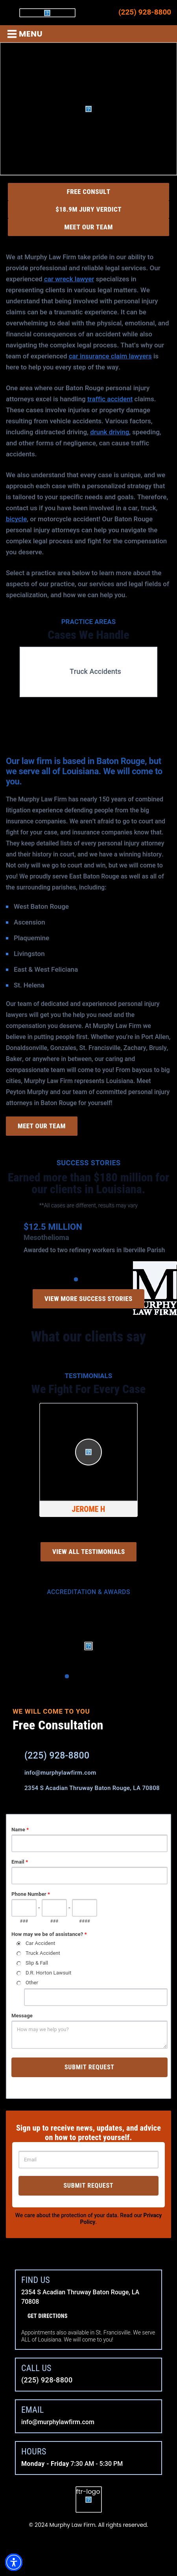 Murphy Law Firm LLC - New Orleans LA Lawyers